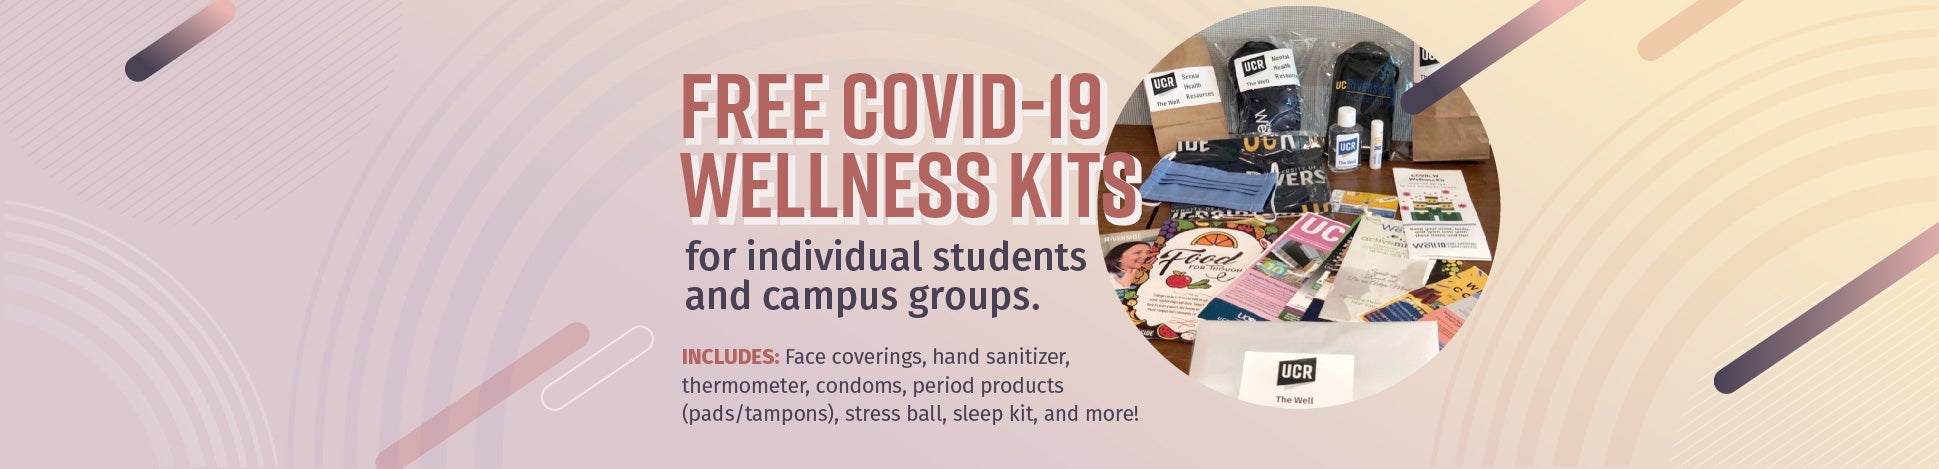 COVID-19 Wellness Kits